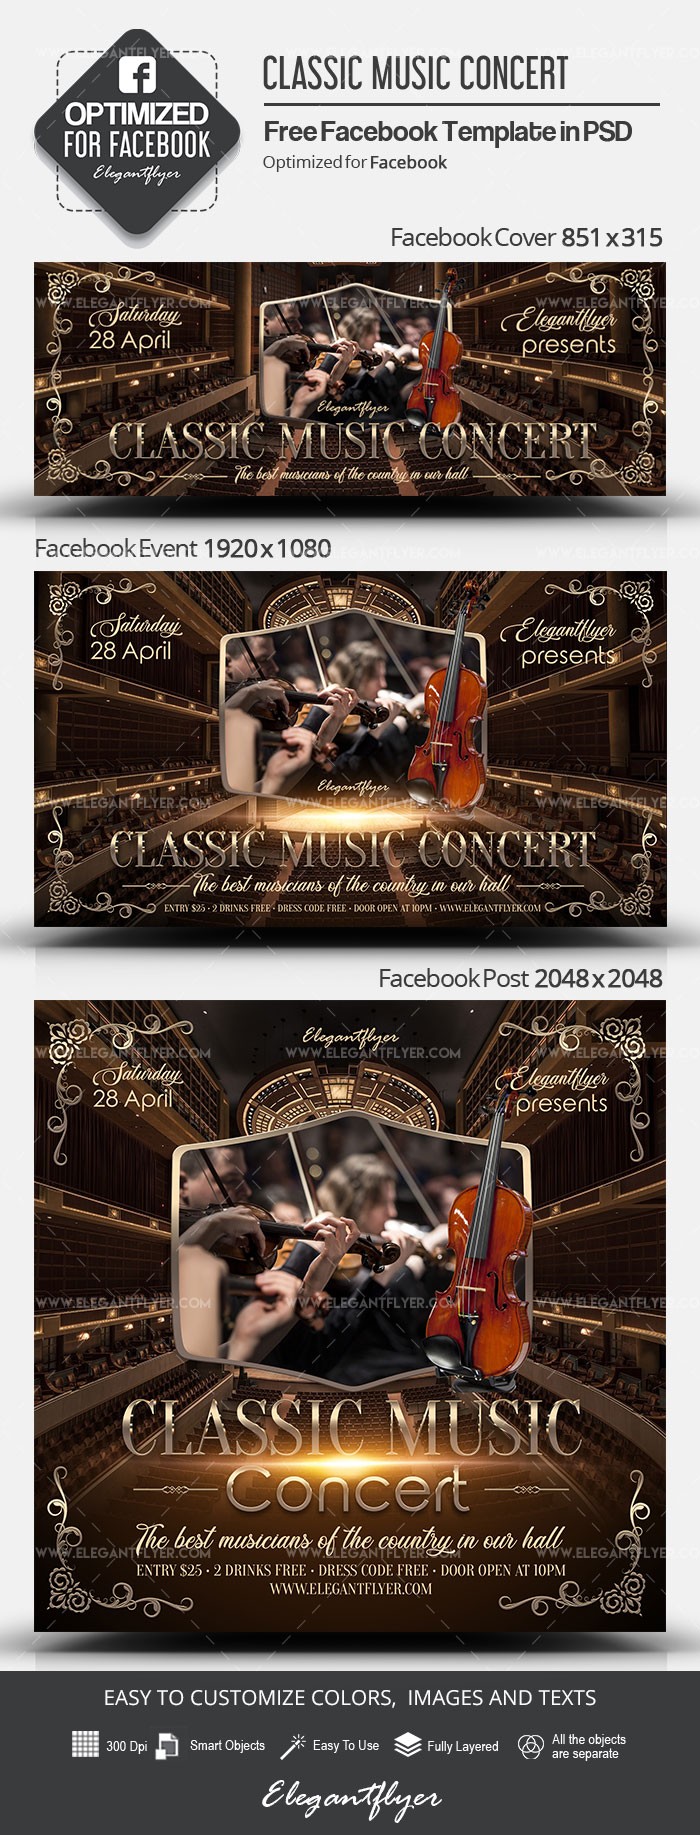 Concerto de Música Clássica no Facebook by ElegantFlyer